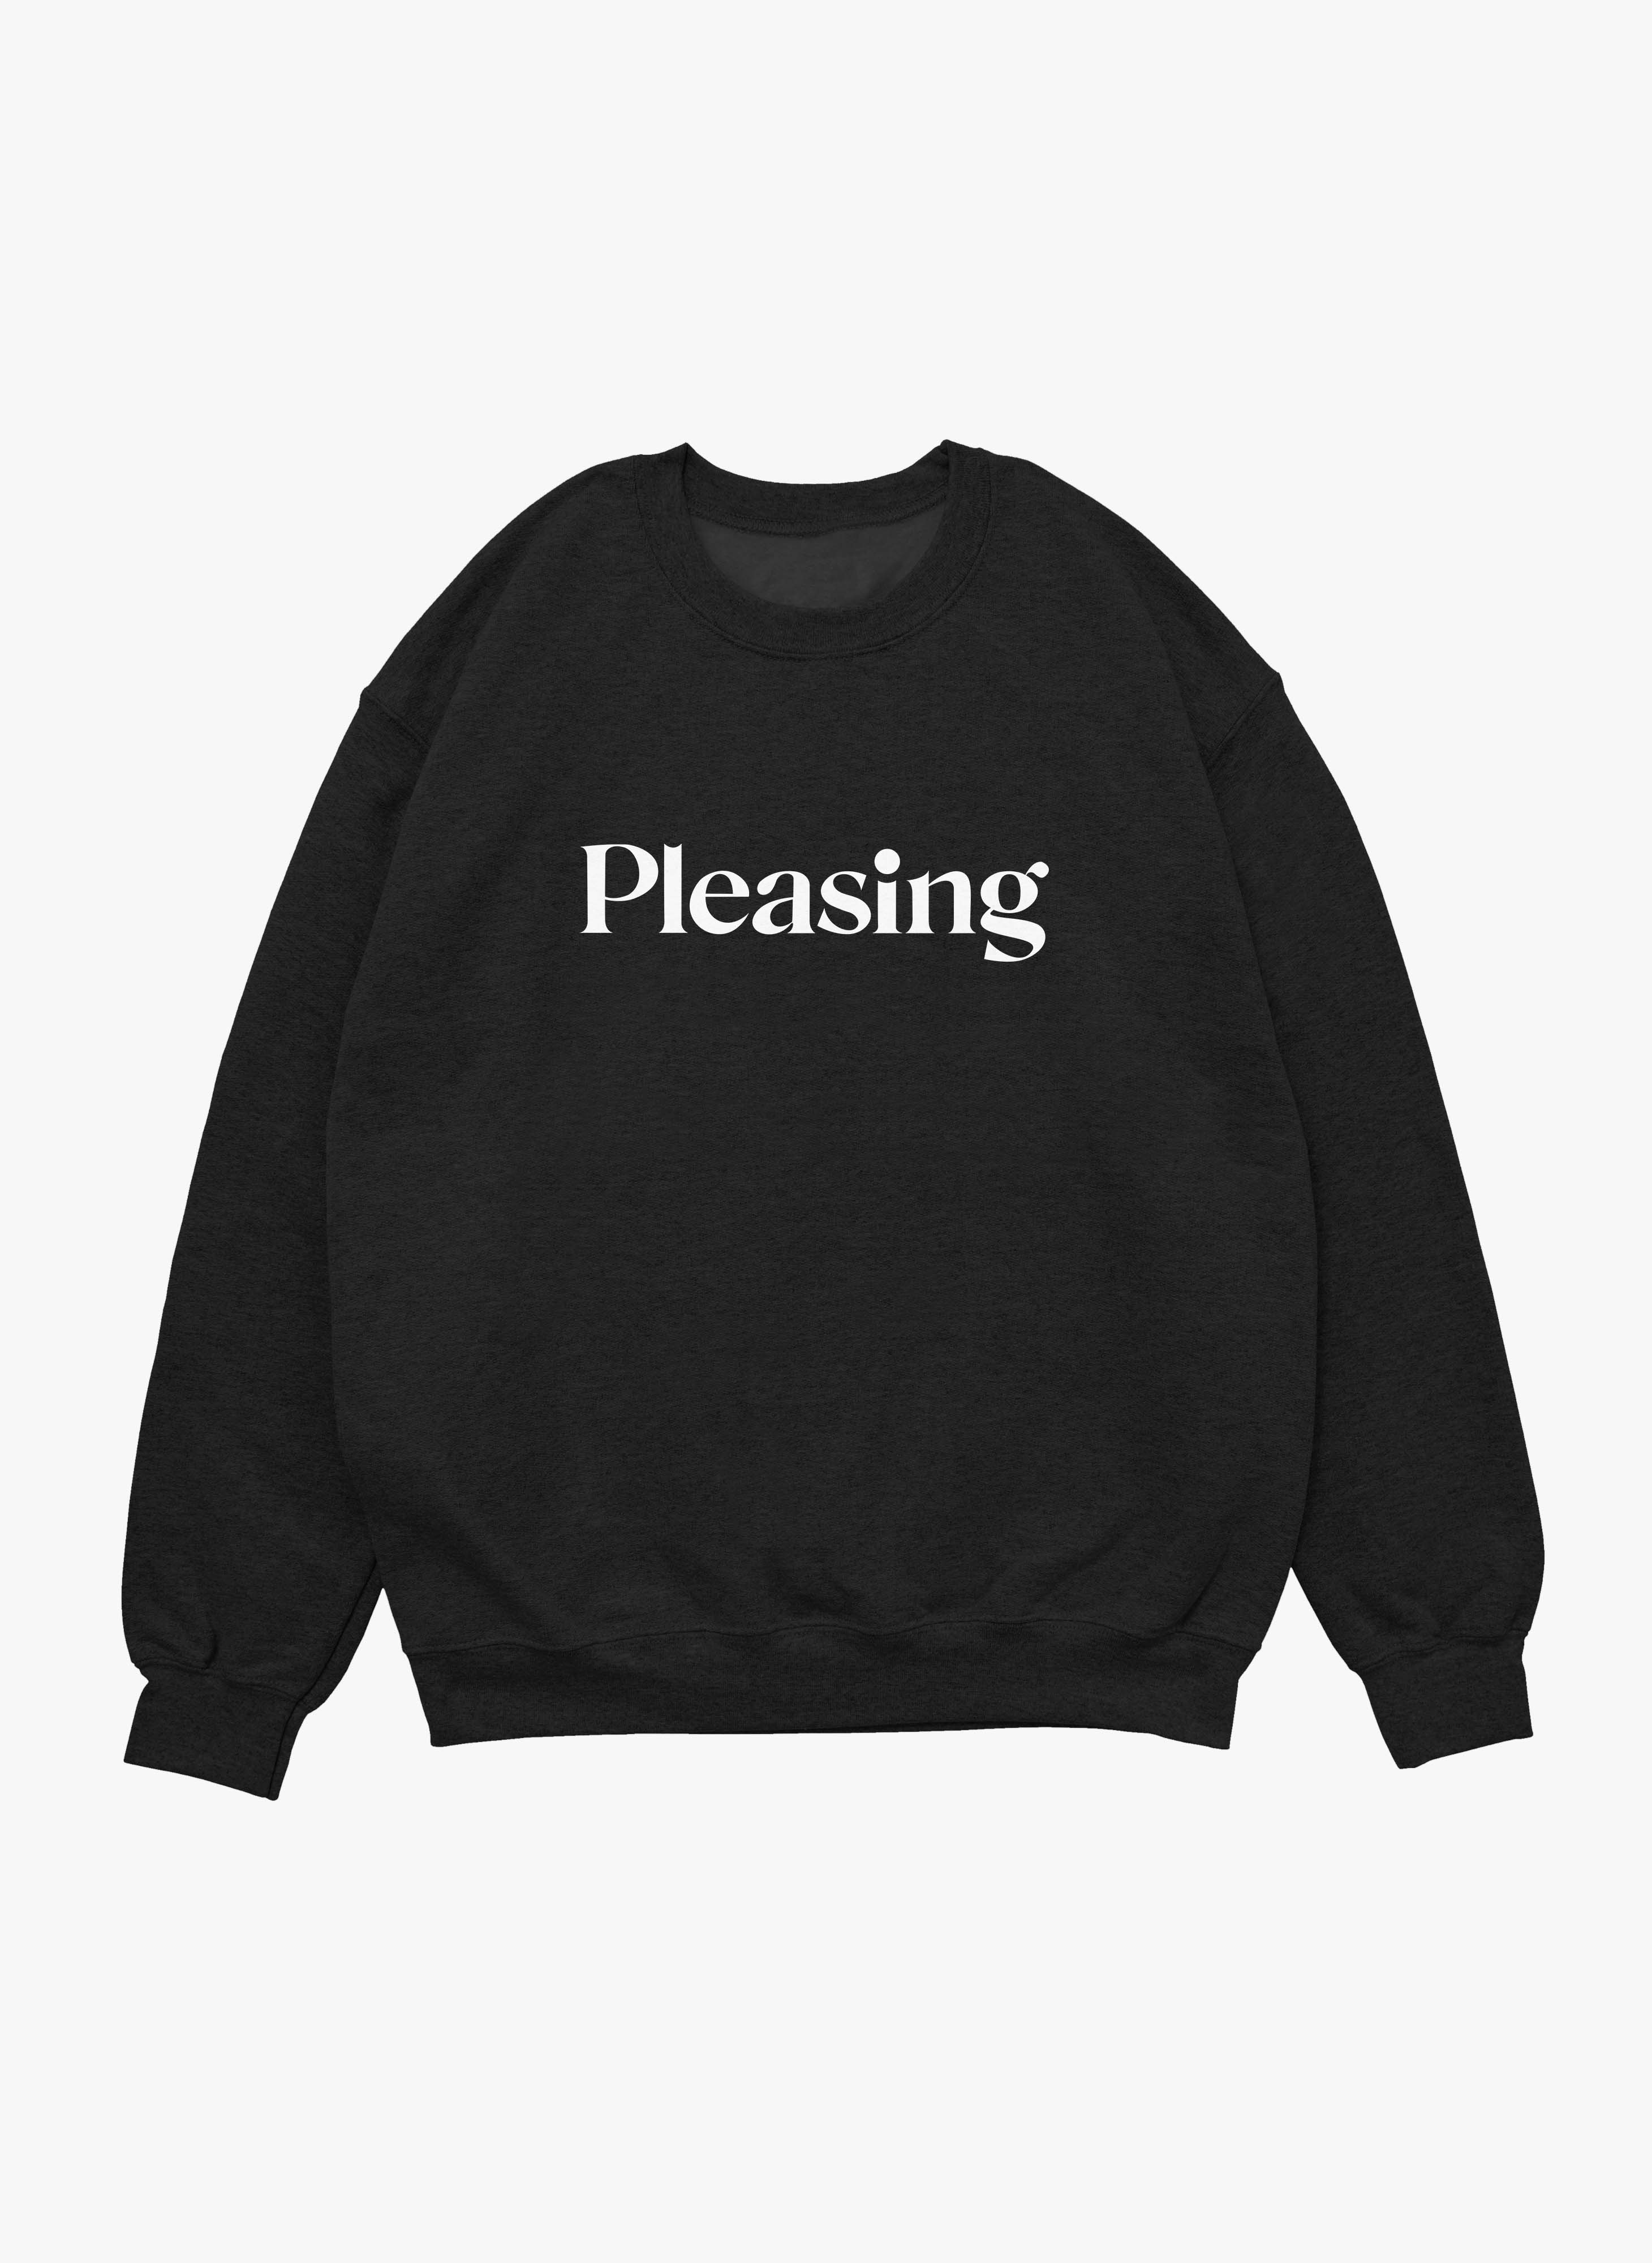 Harrys Styles Pleasing Black Unisex Sweatshirt | Sale